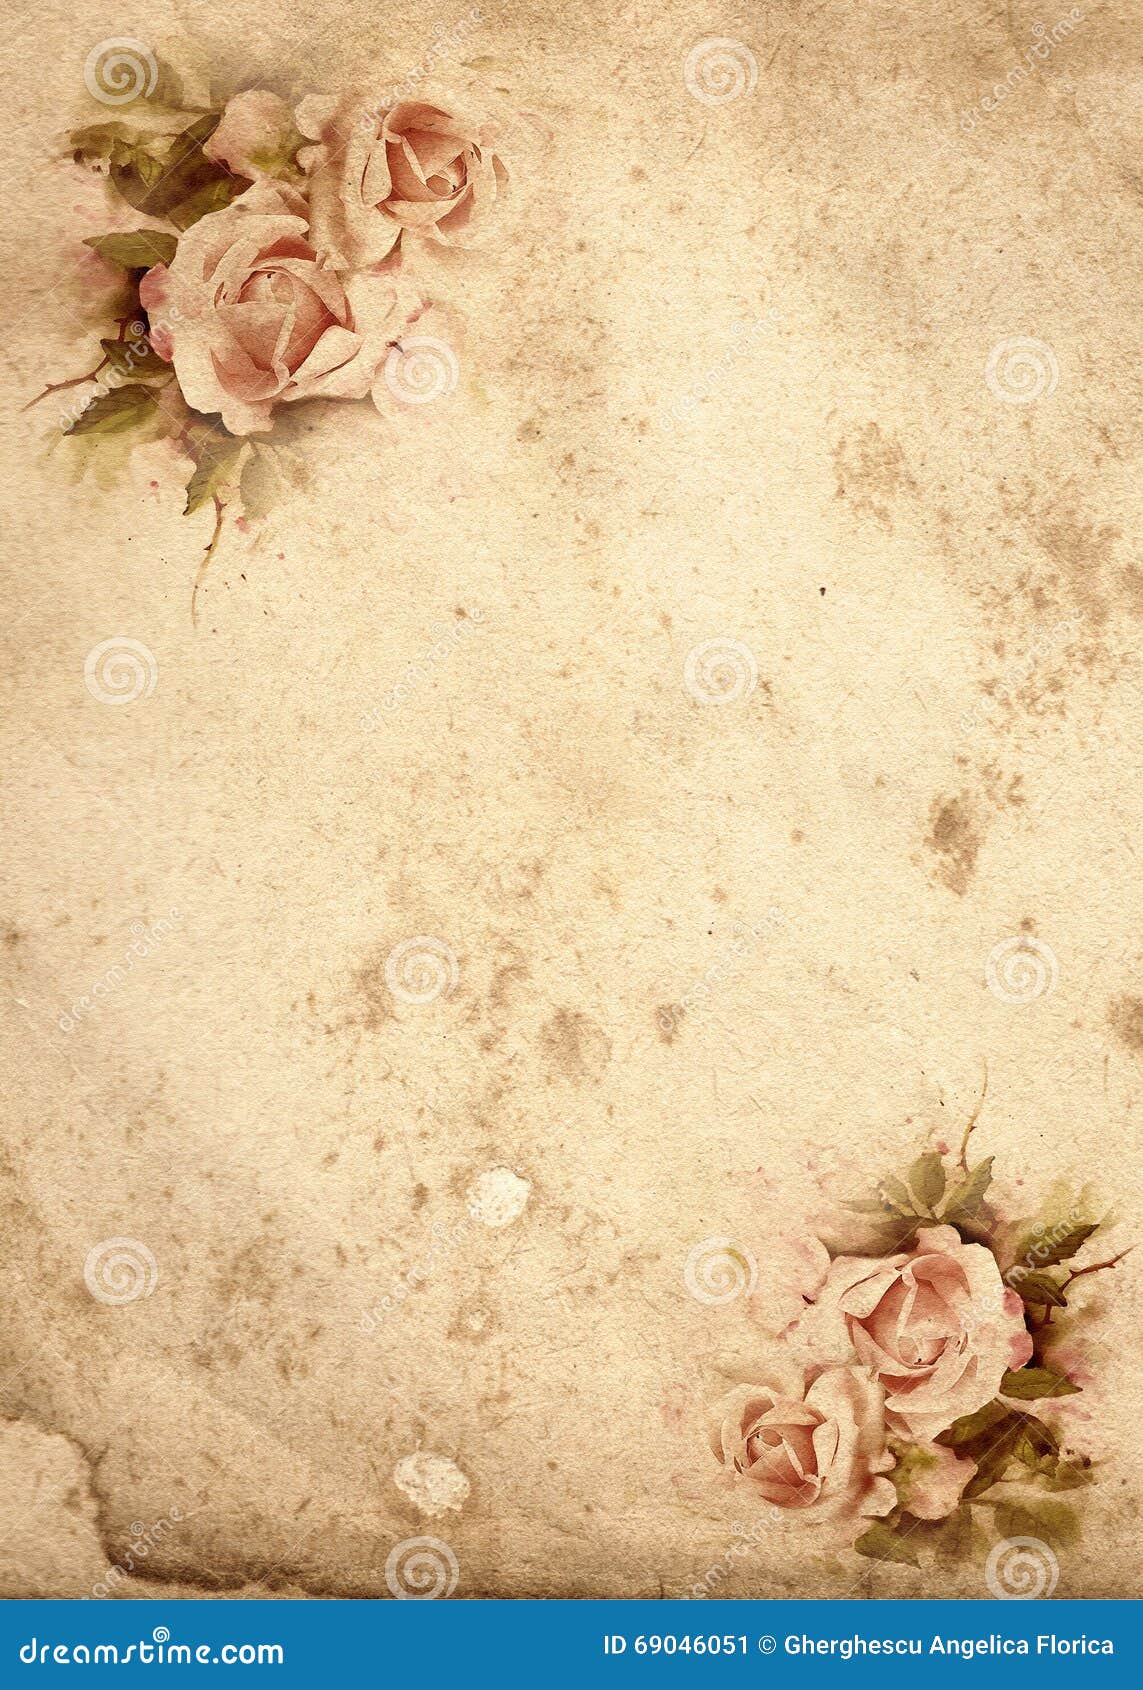 Hoa hồng cổ điển: Những đóa hoa hồng kiêu sa và lộng lẫy sẽ đưa bạn trở về thời kỳ cổ điển đầy lãng mạn. Hãy chiêm ngưỡng sự quý phái và đẳng cấp của loài hoa này bằng cách xem hình ảnh liên quan đến từ khóa này.